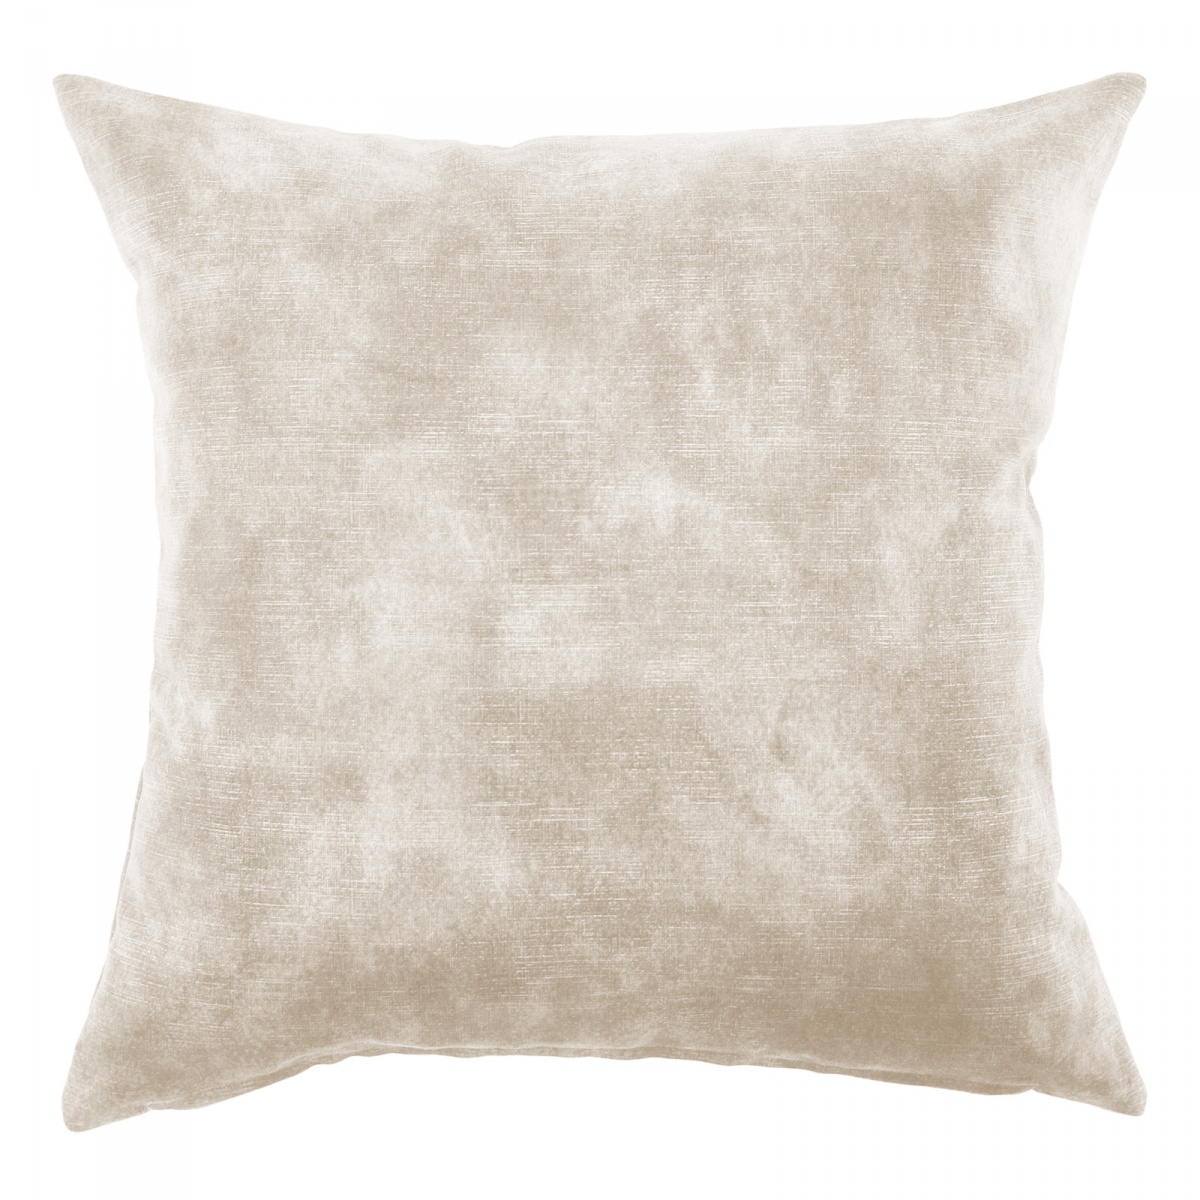 Lovely Almond Velvet Cushion - 60x60cm